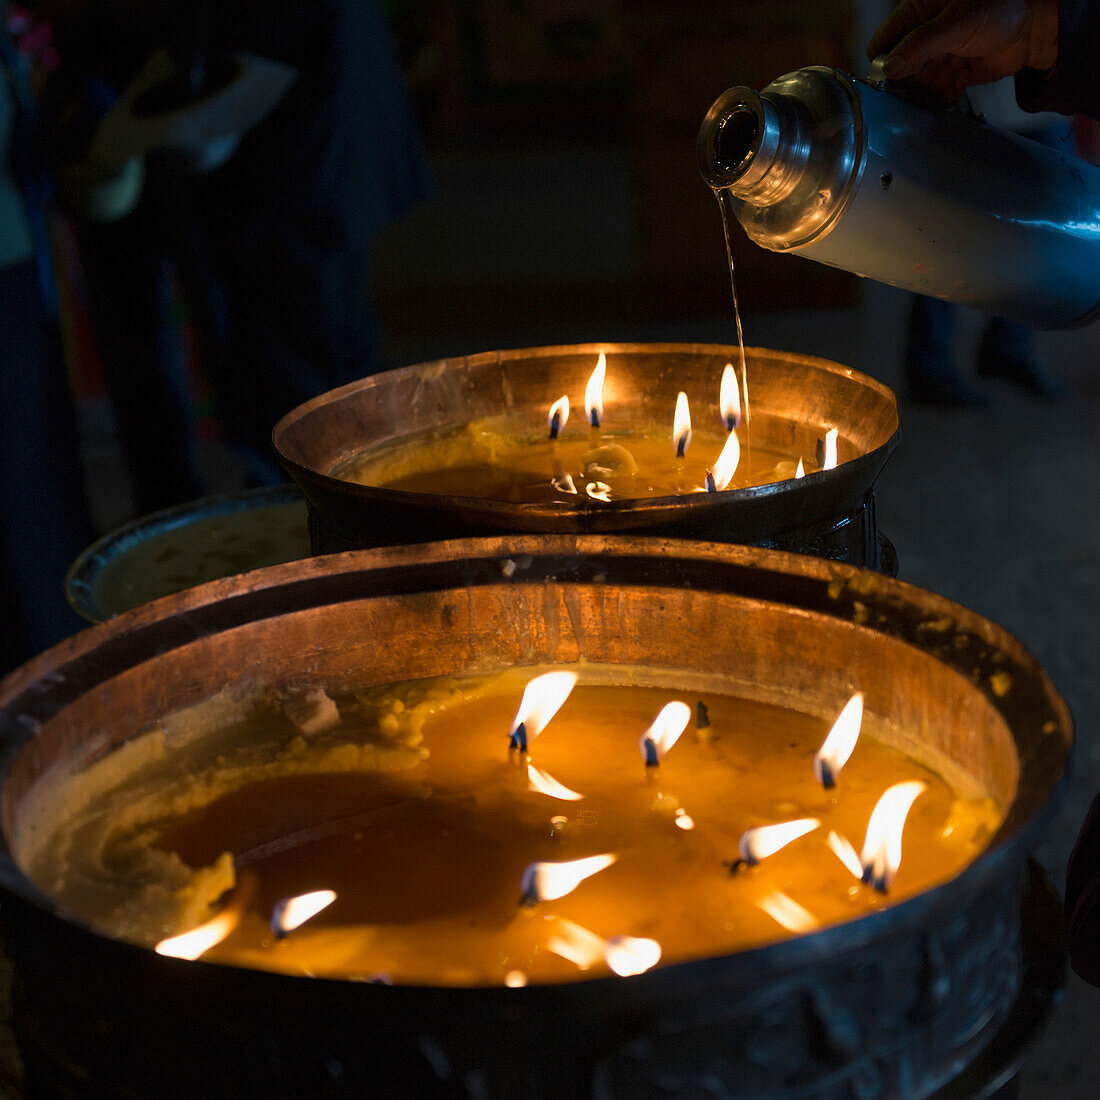 'Candles burning in drepung monastery;Lhasa xizang china'